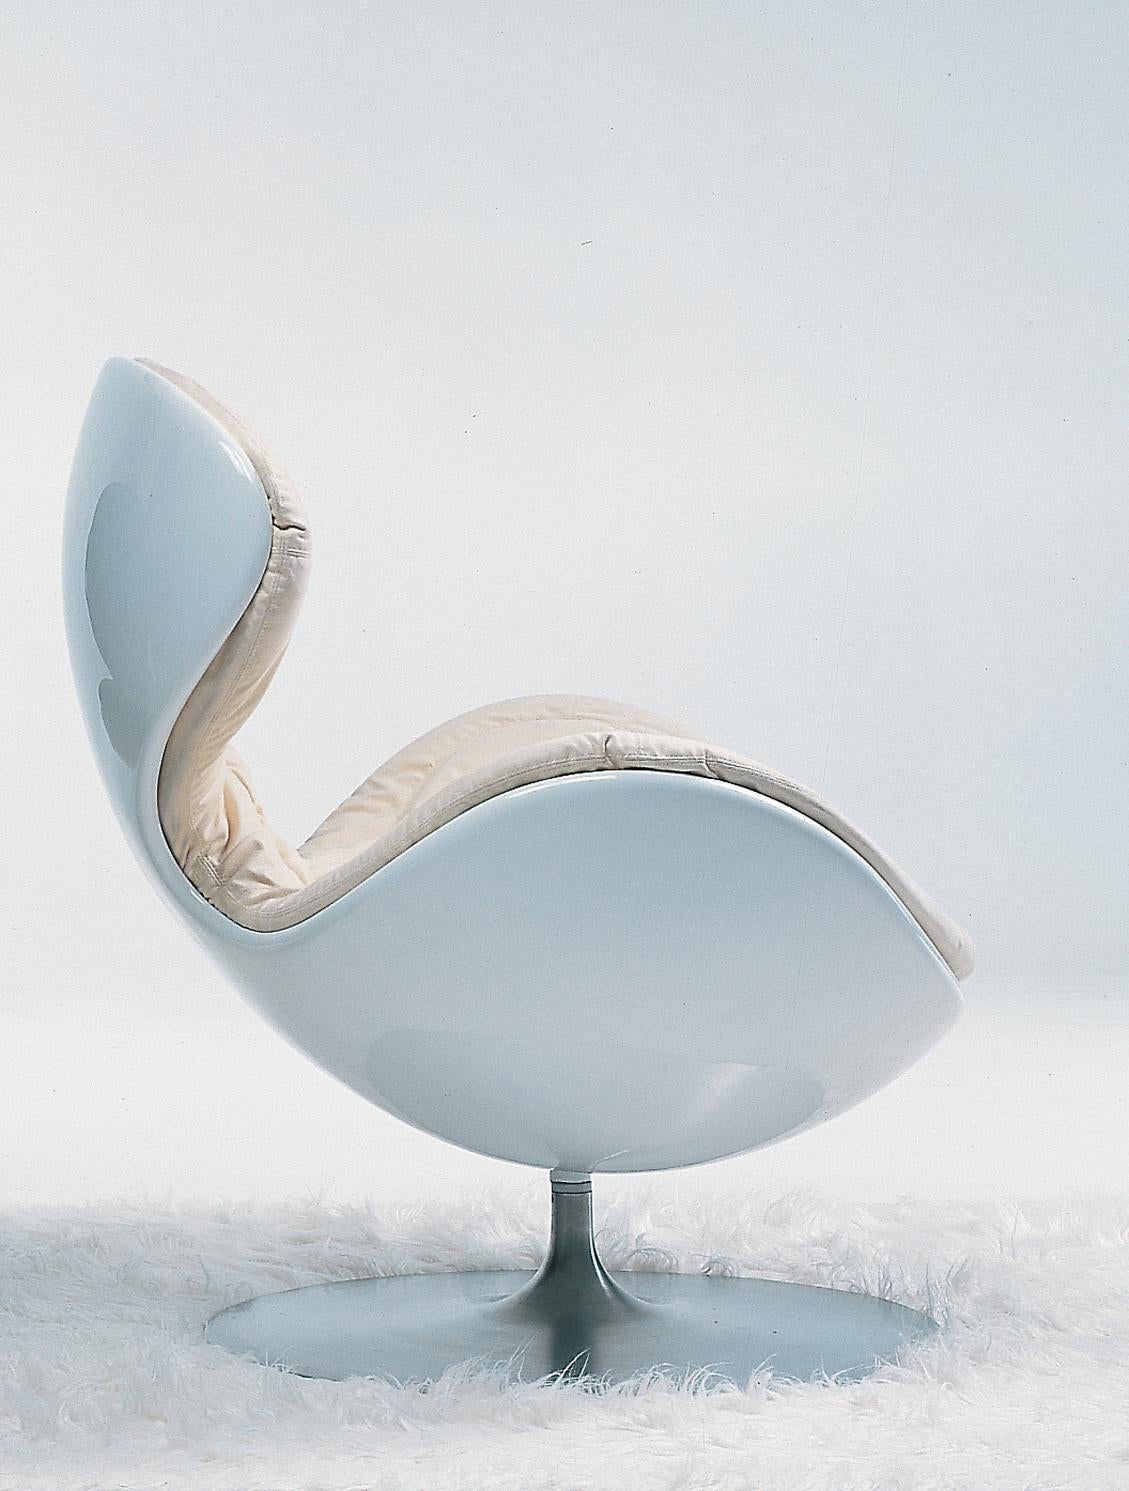 Jetsons est une façon confortable de s'asseoir. Jetsons, c'est un hamac, c'est une chaise-longue, c'est un trône, c'est un nid, en même temps c'est dynamique et moderne.
Siège pivotant.
Structure en fibre de verre avec profilé en acier.
Base en